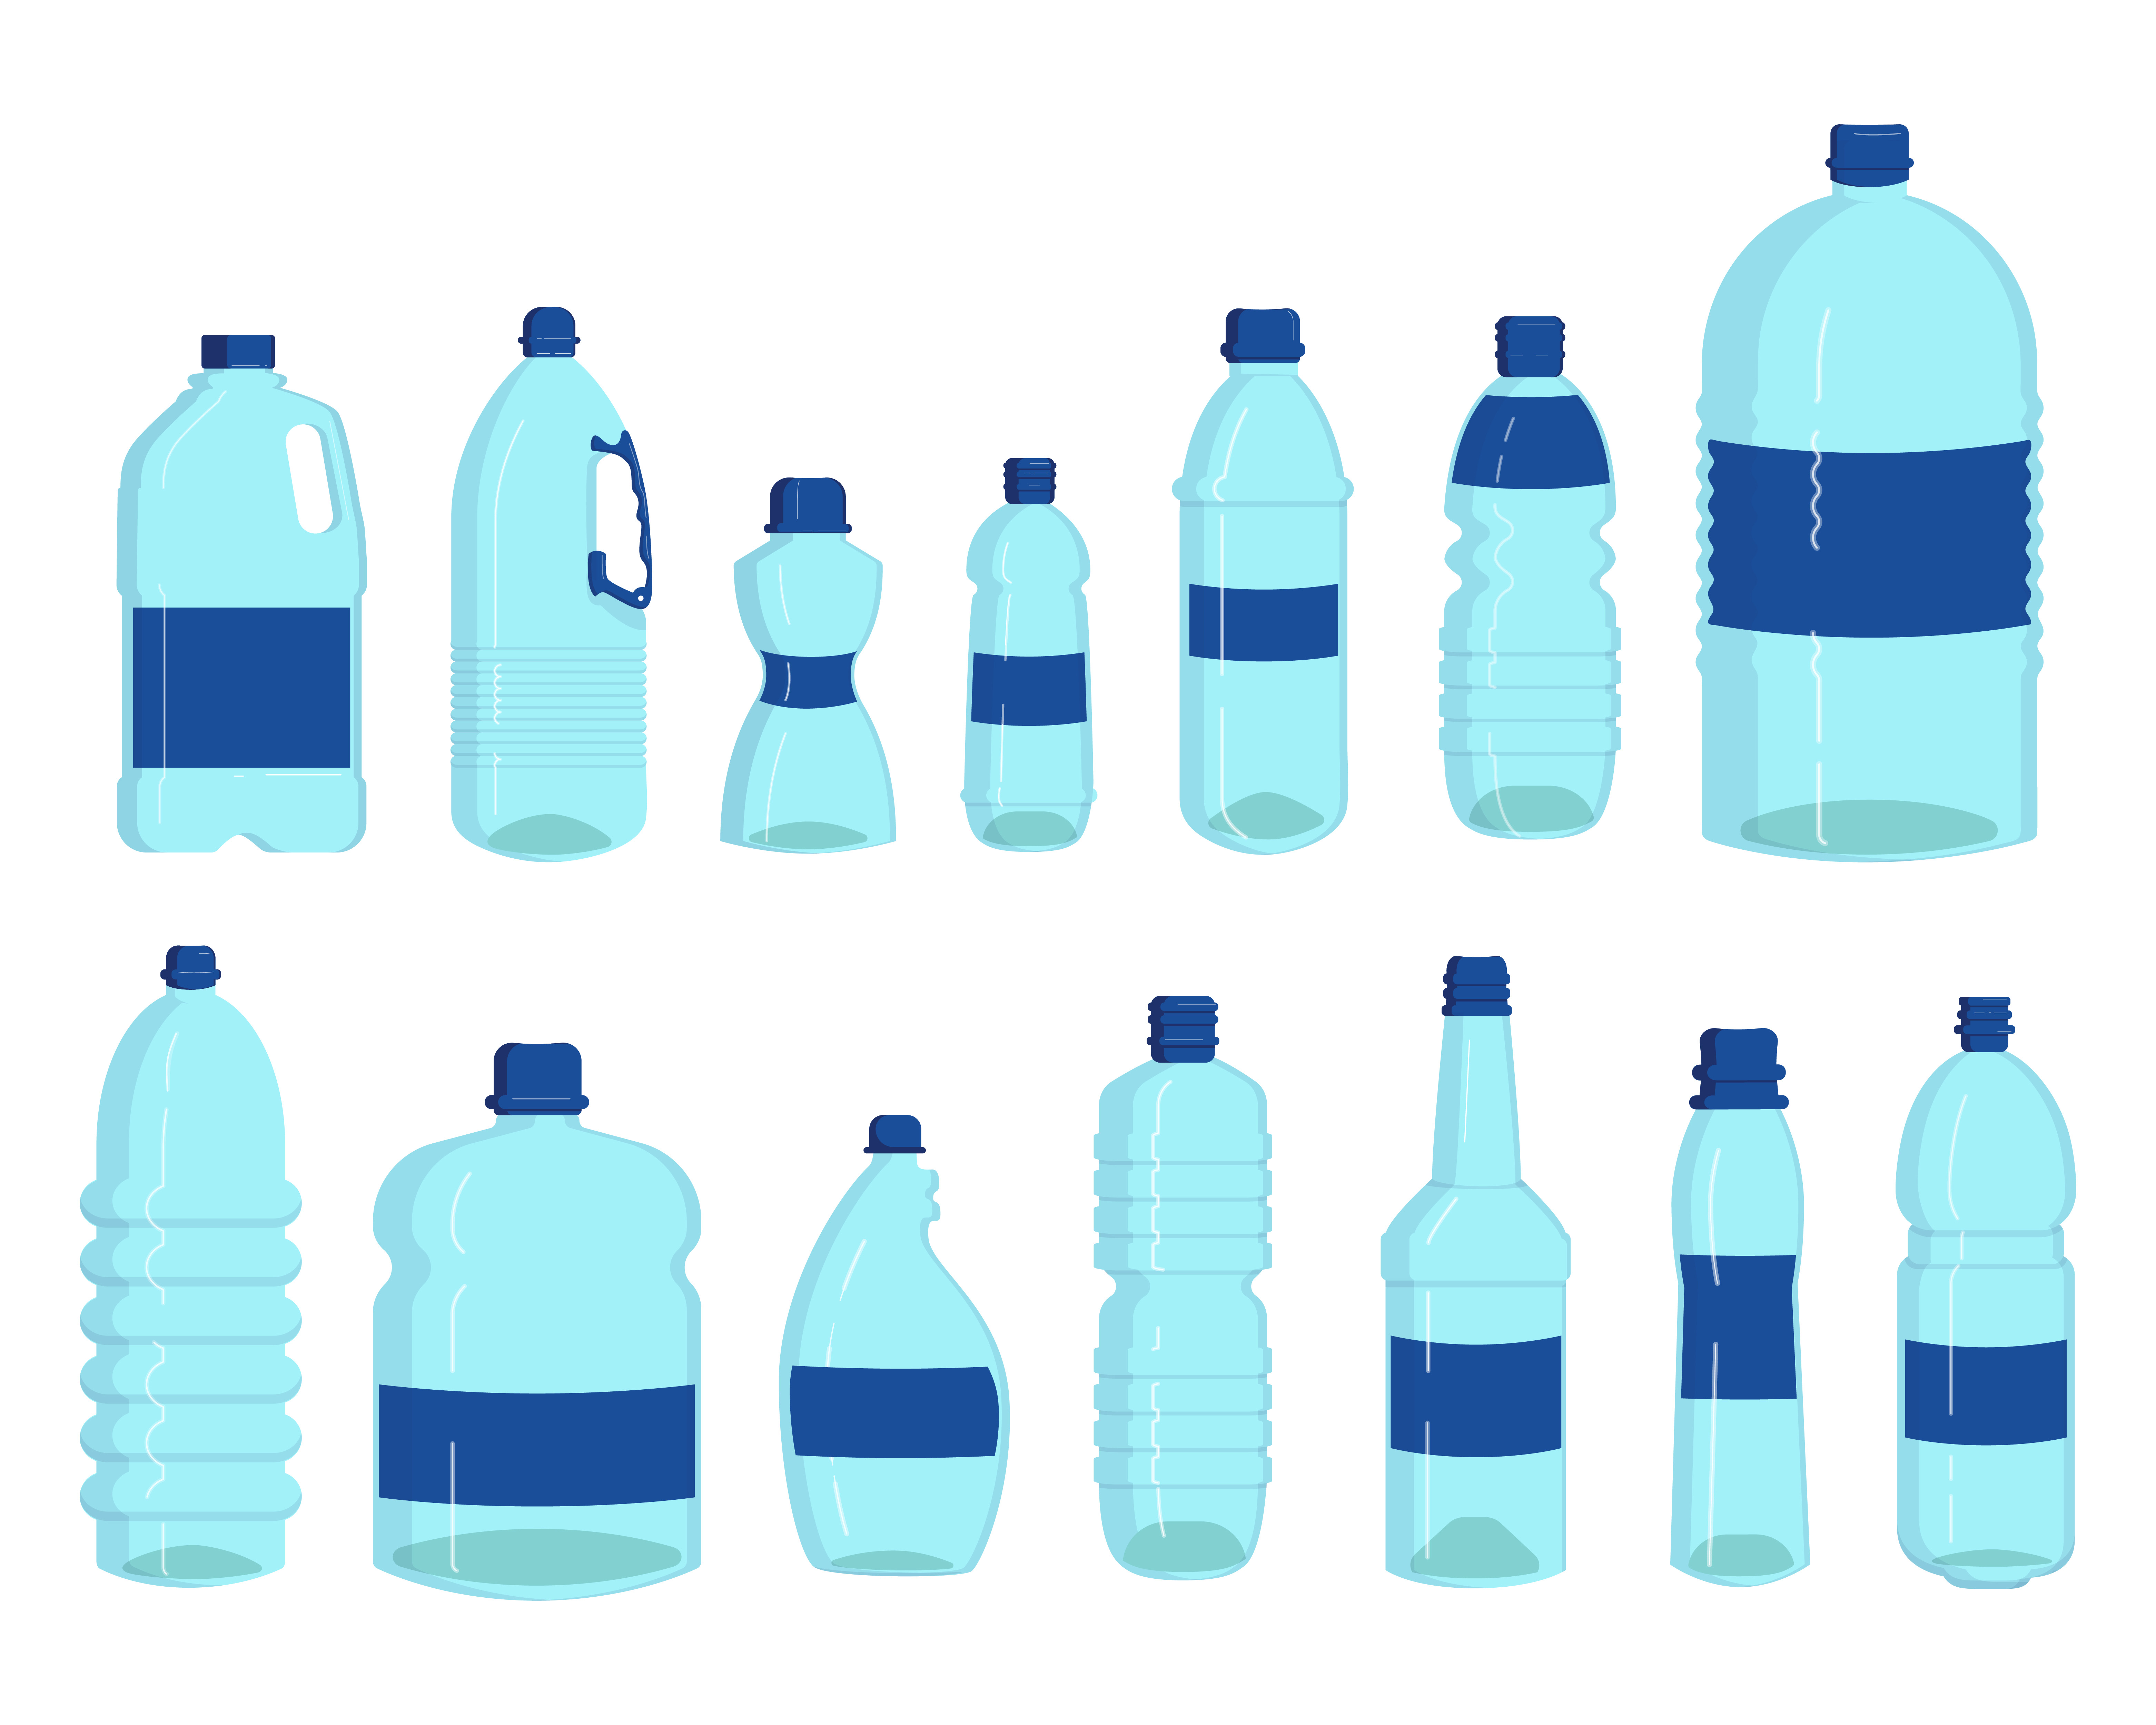 La imagen muestra distintos botes, botellas y garrafas